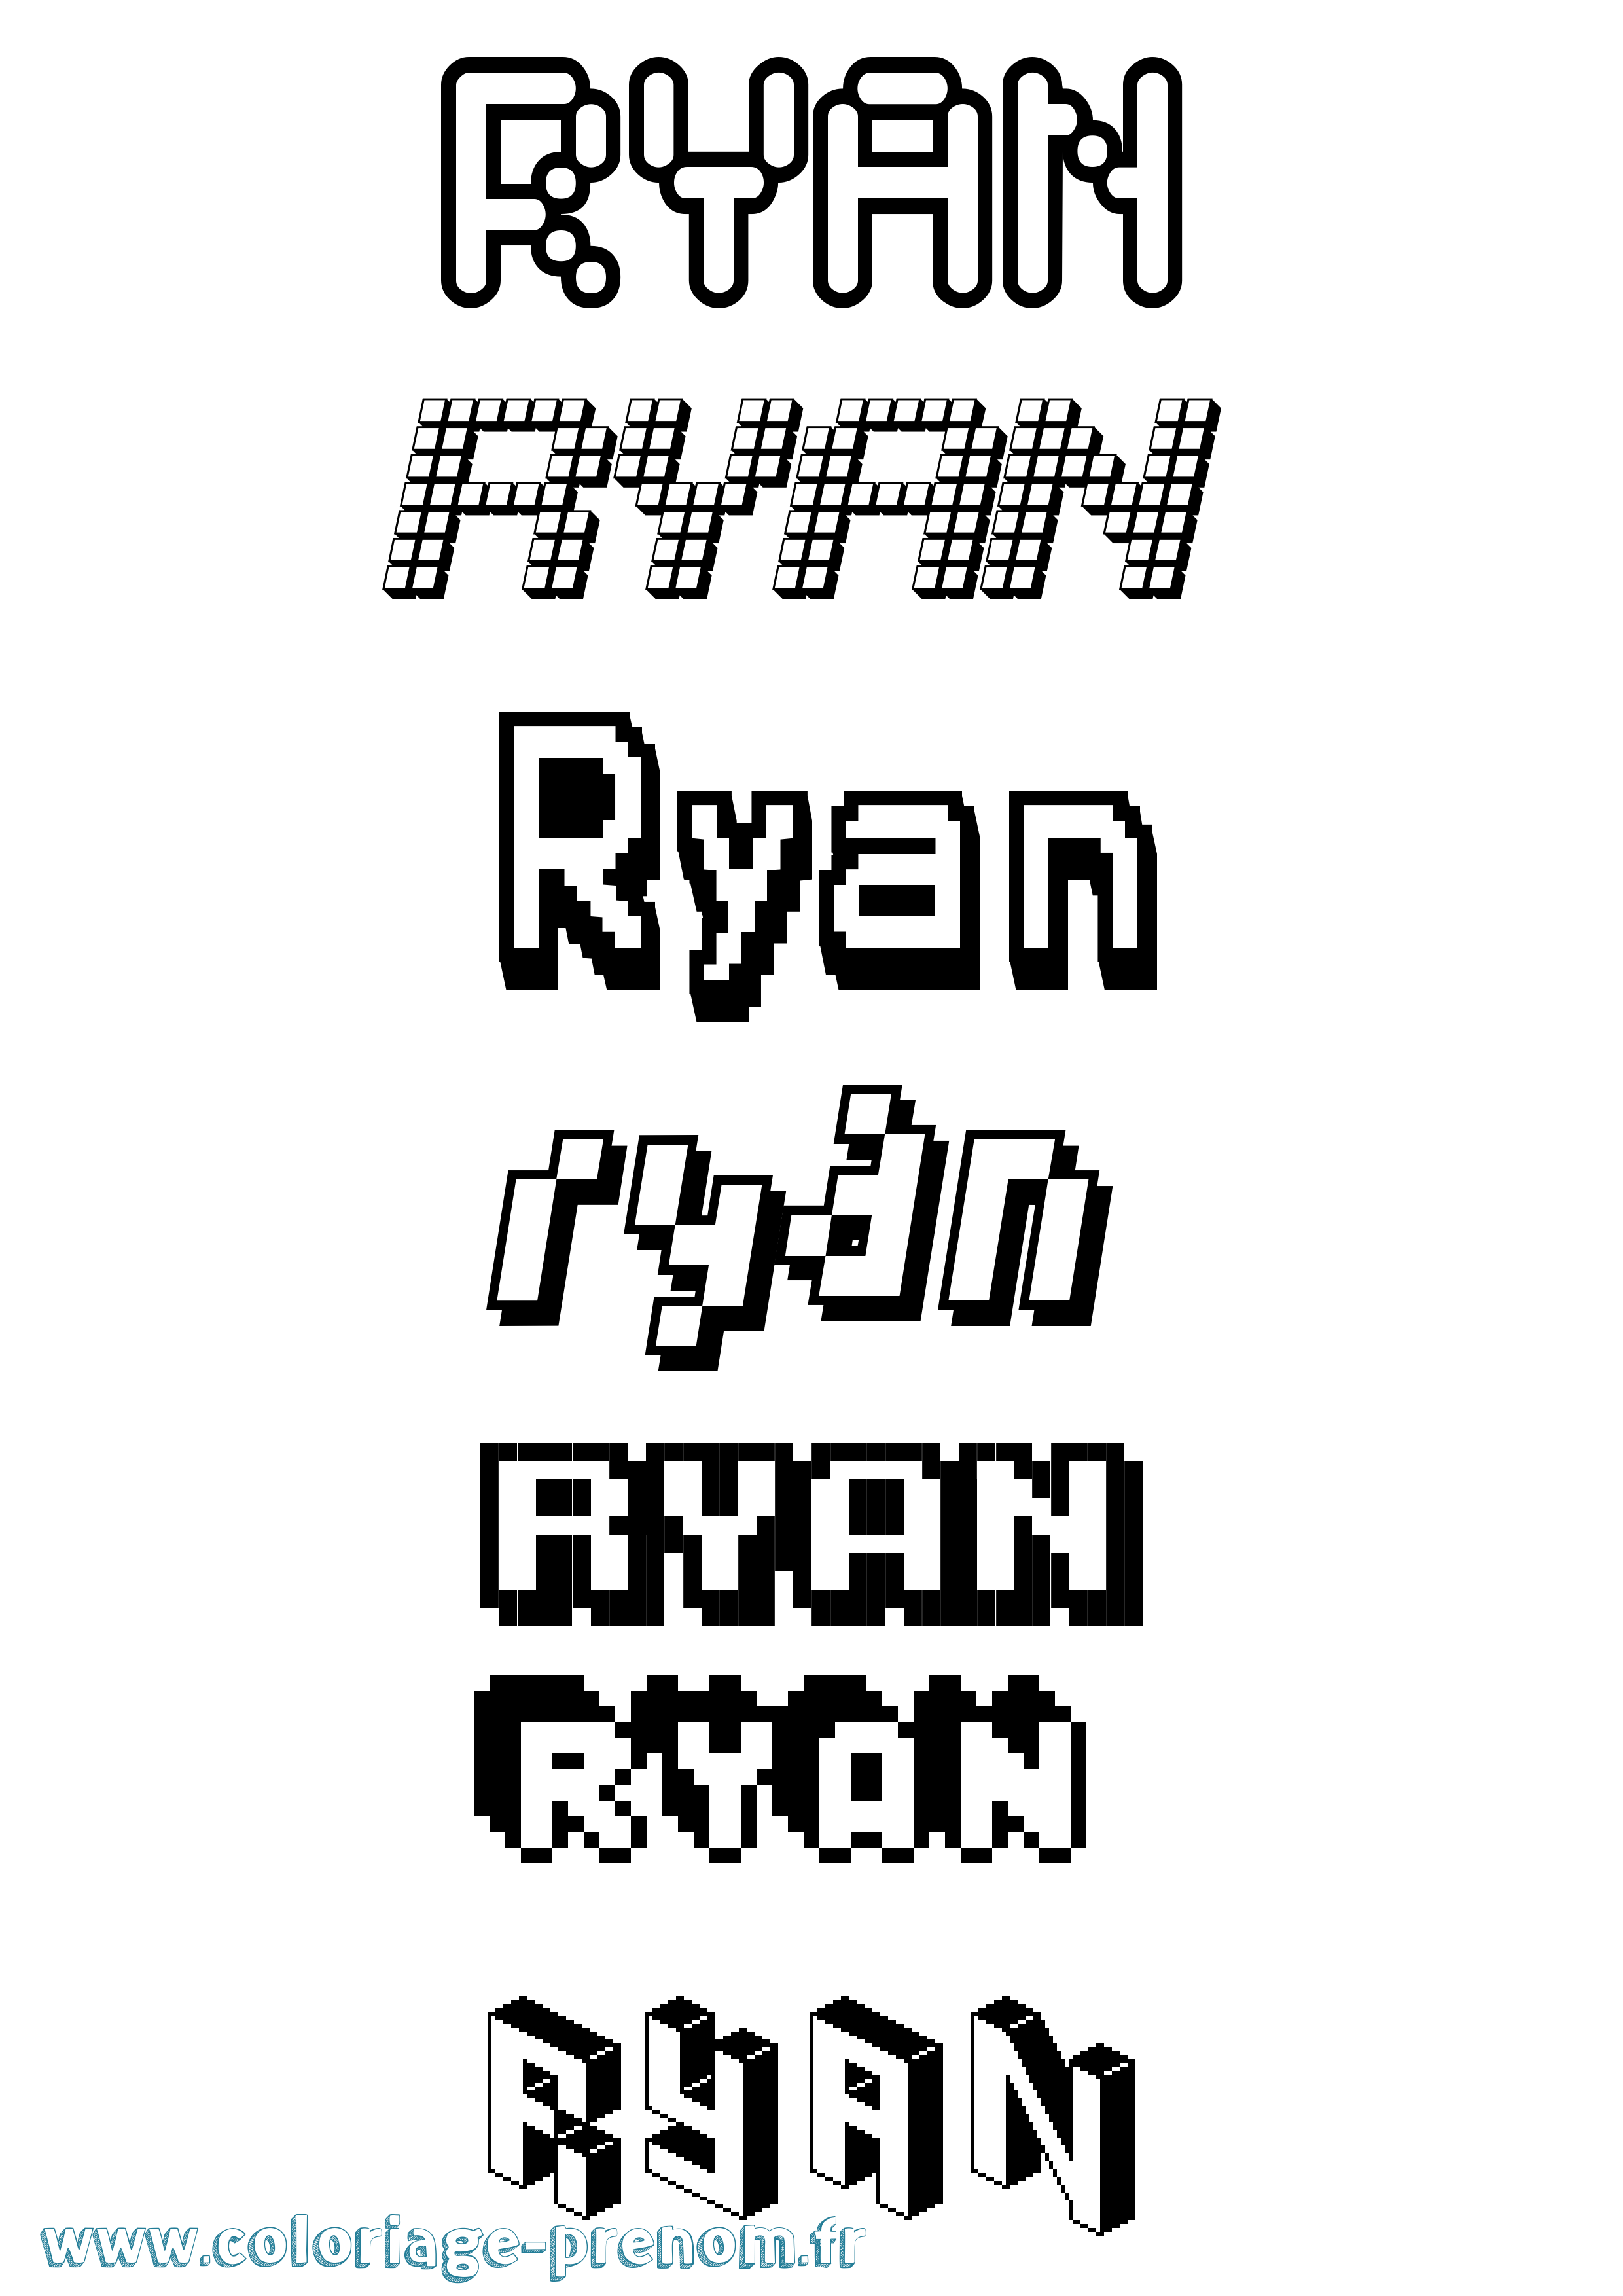 Coloriage prénom Ryan